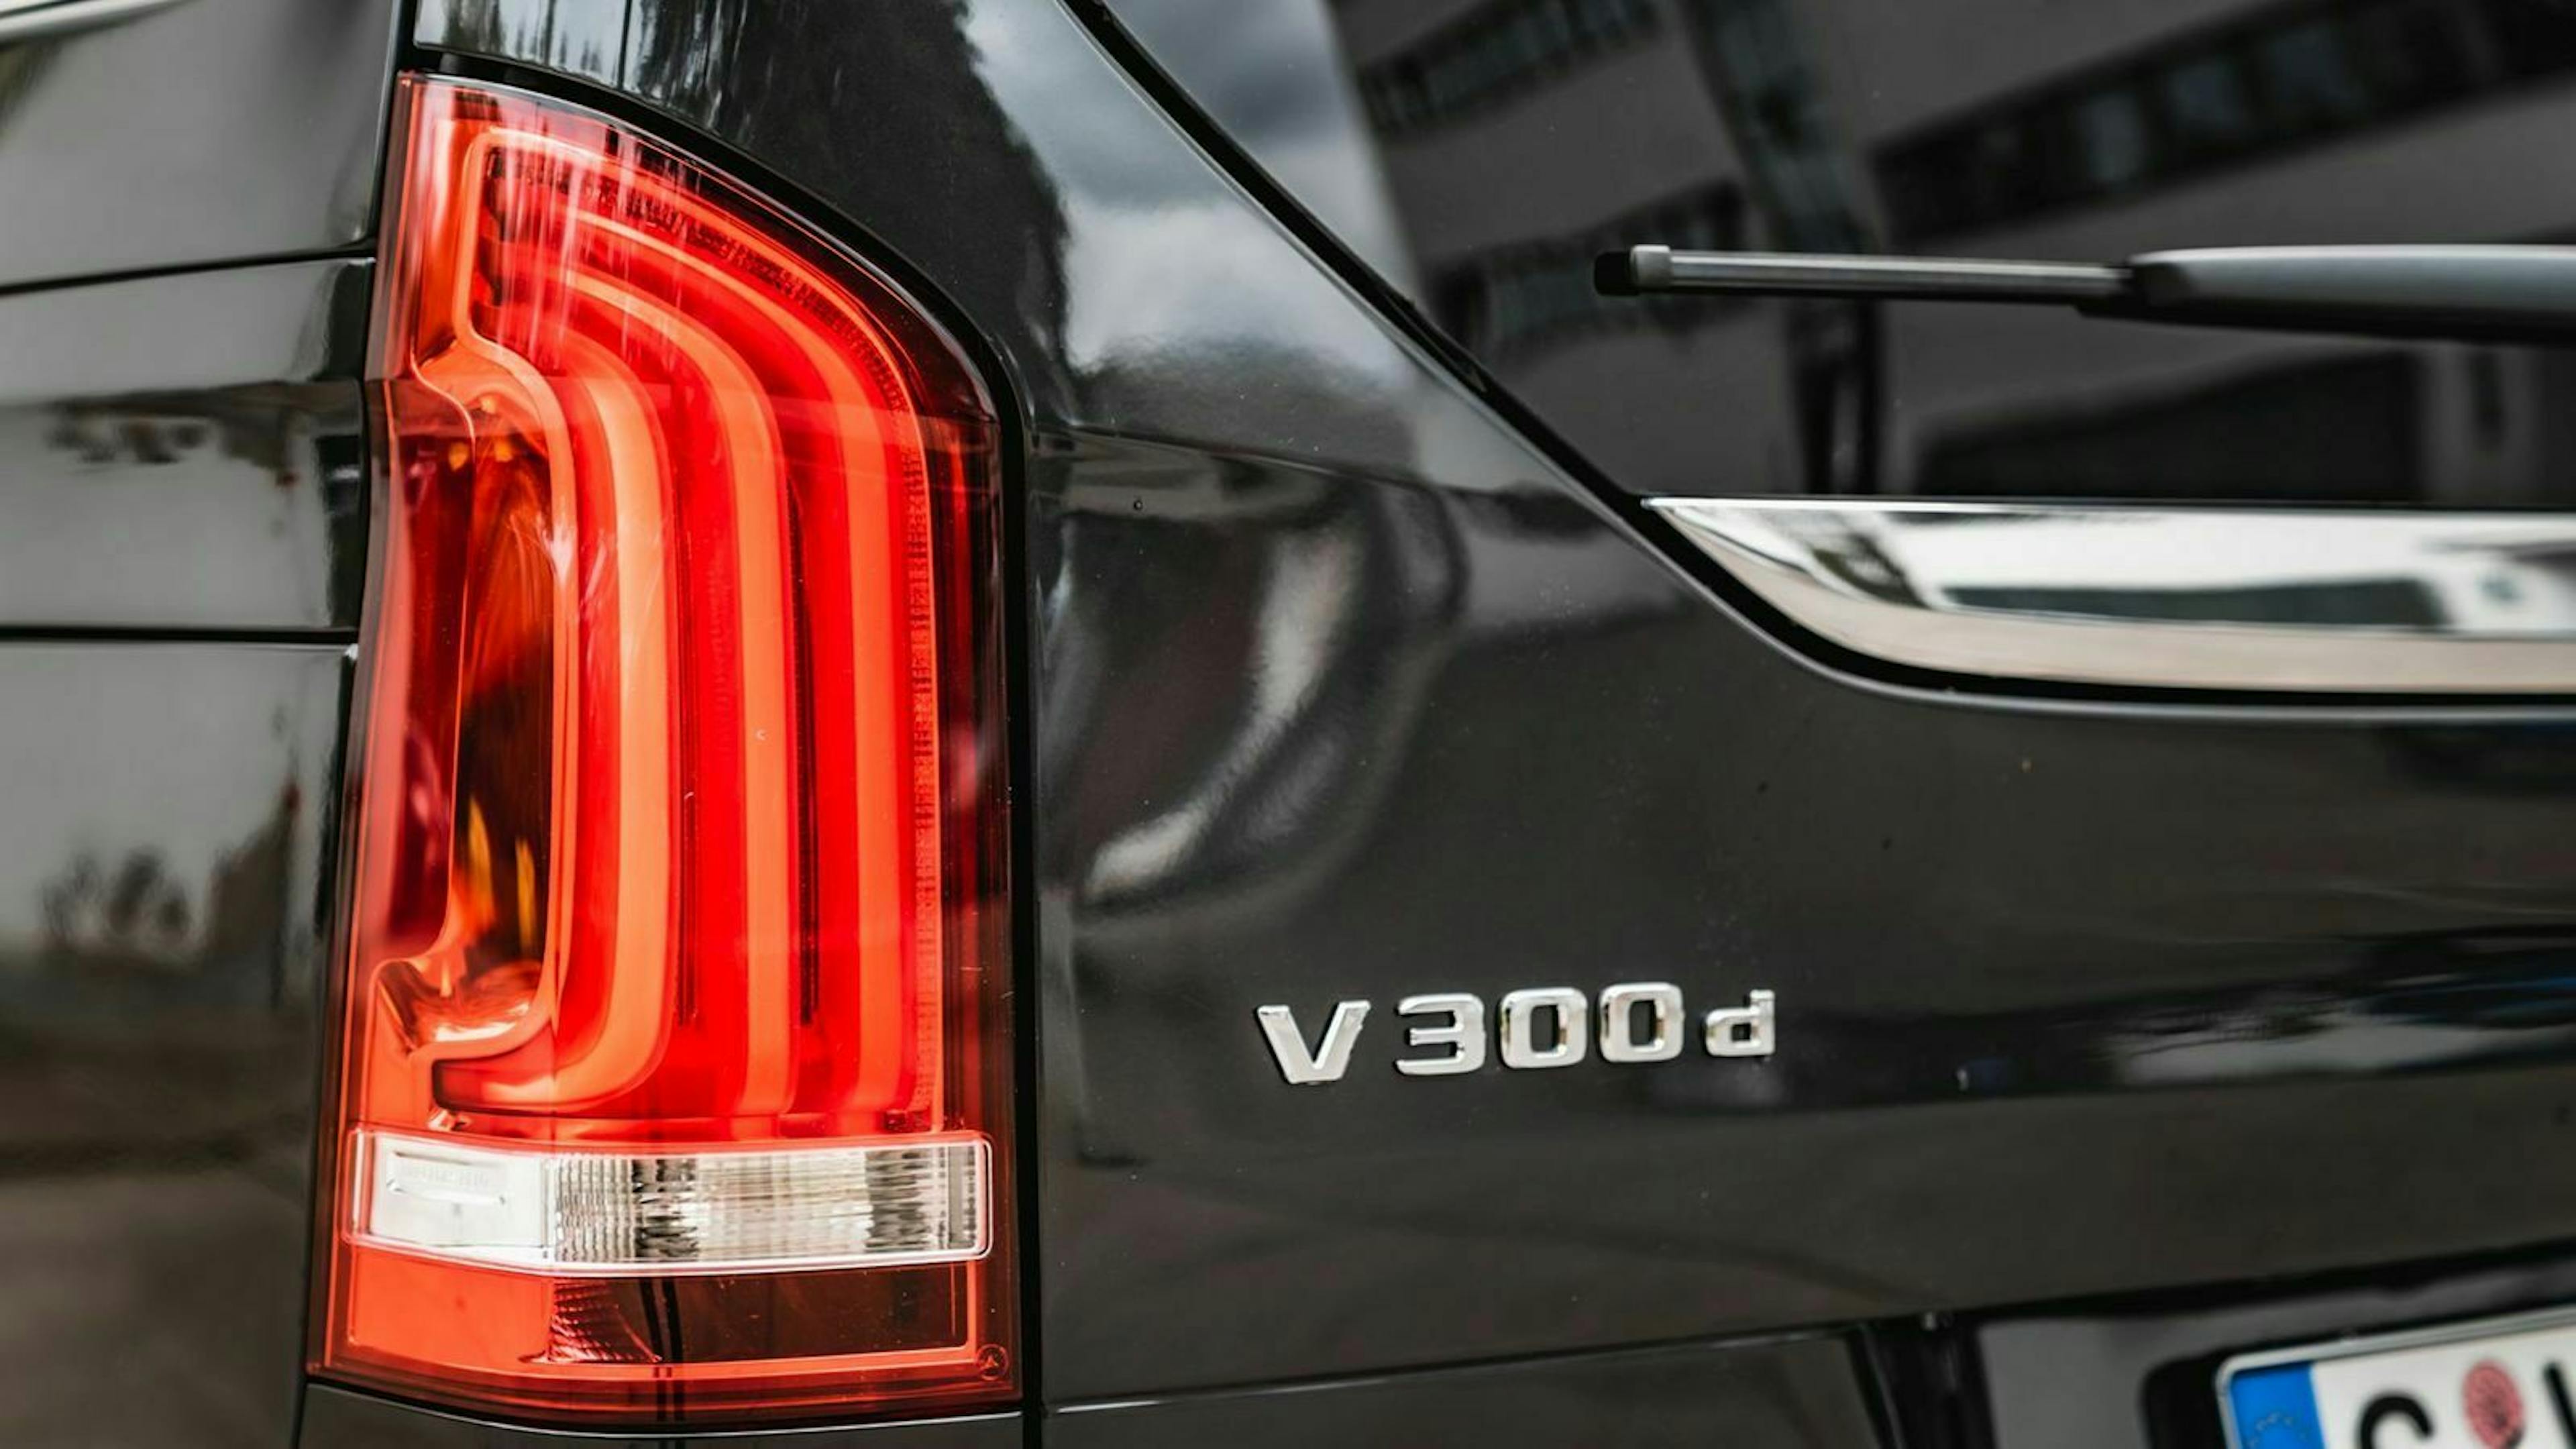 Zu sehen ist das "V300d"-Emblem am Heck des Mercedes